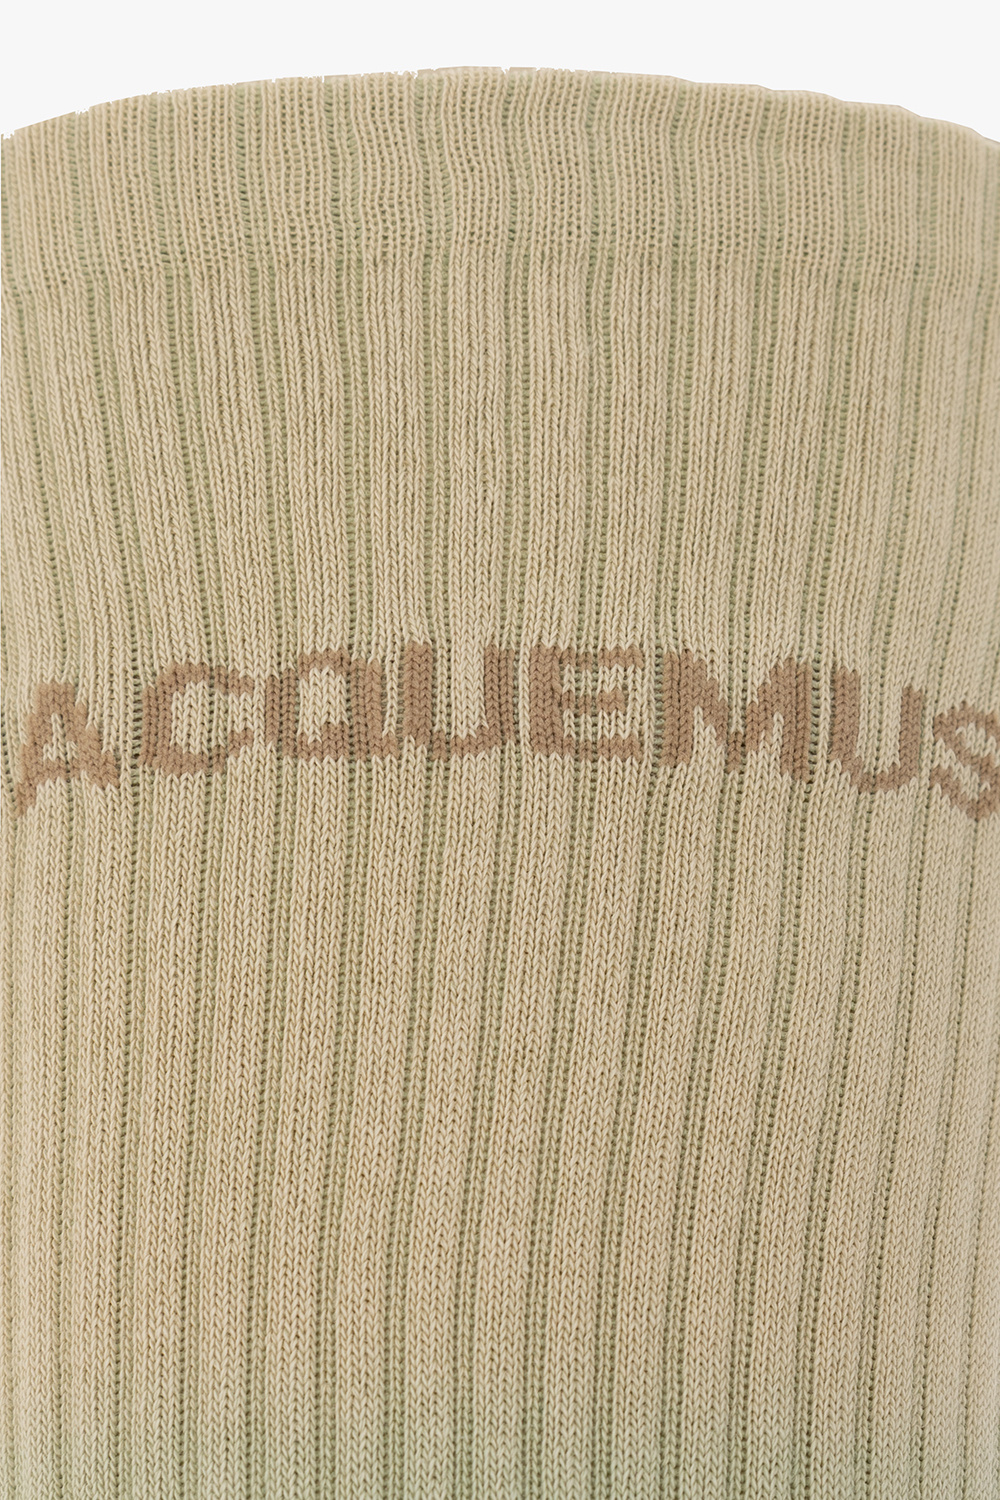 Jacquemus of the uncompromising Italian brand